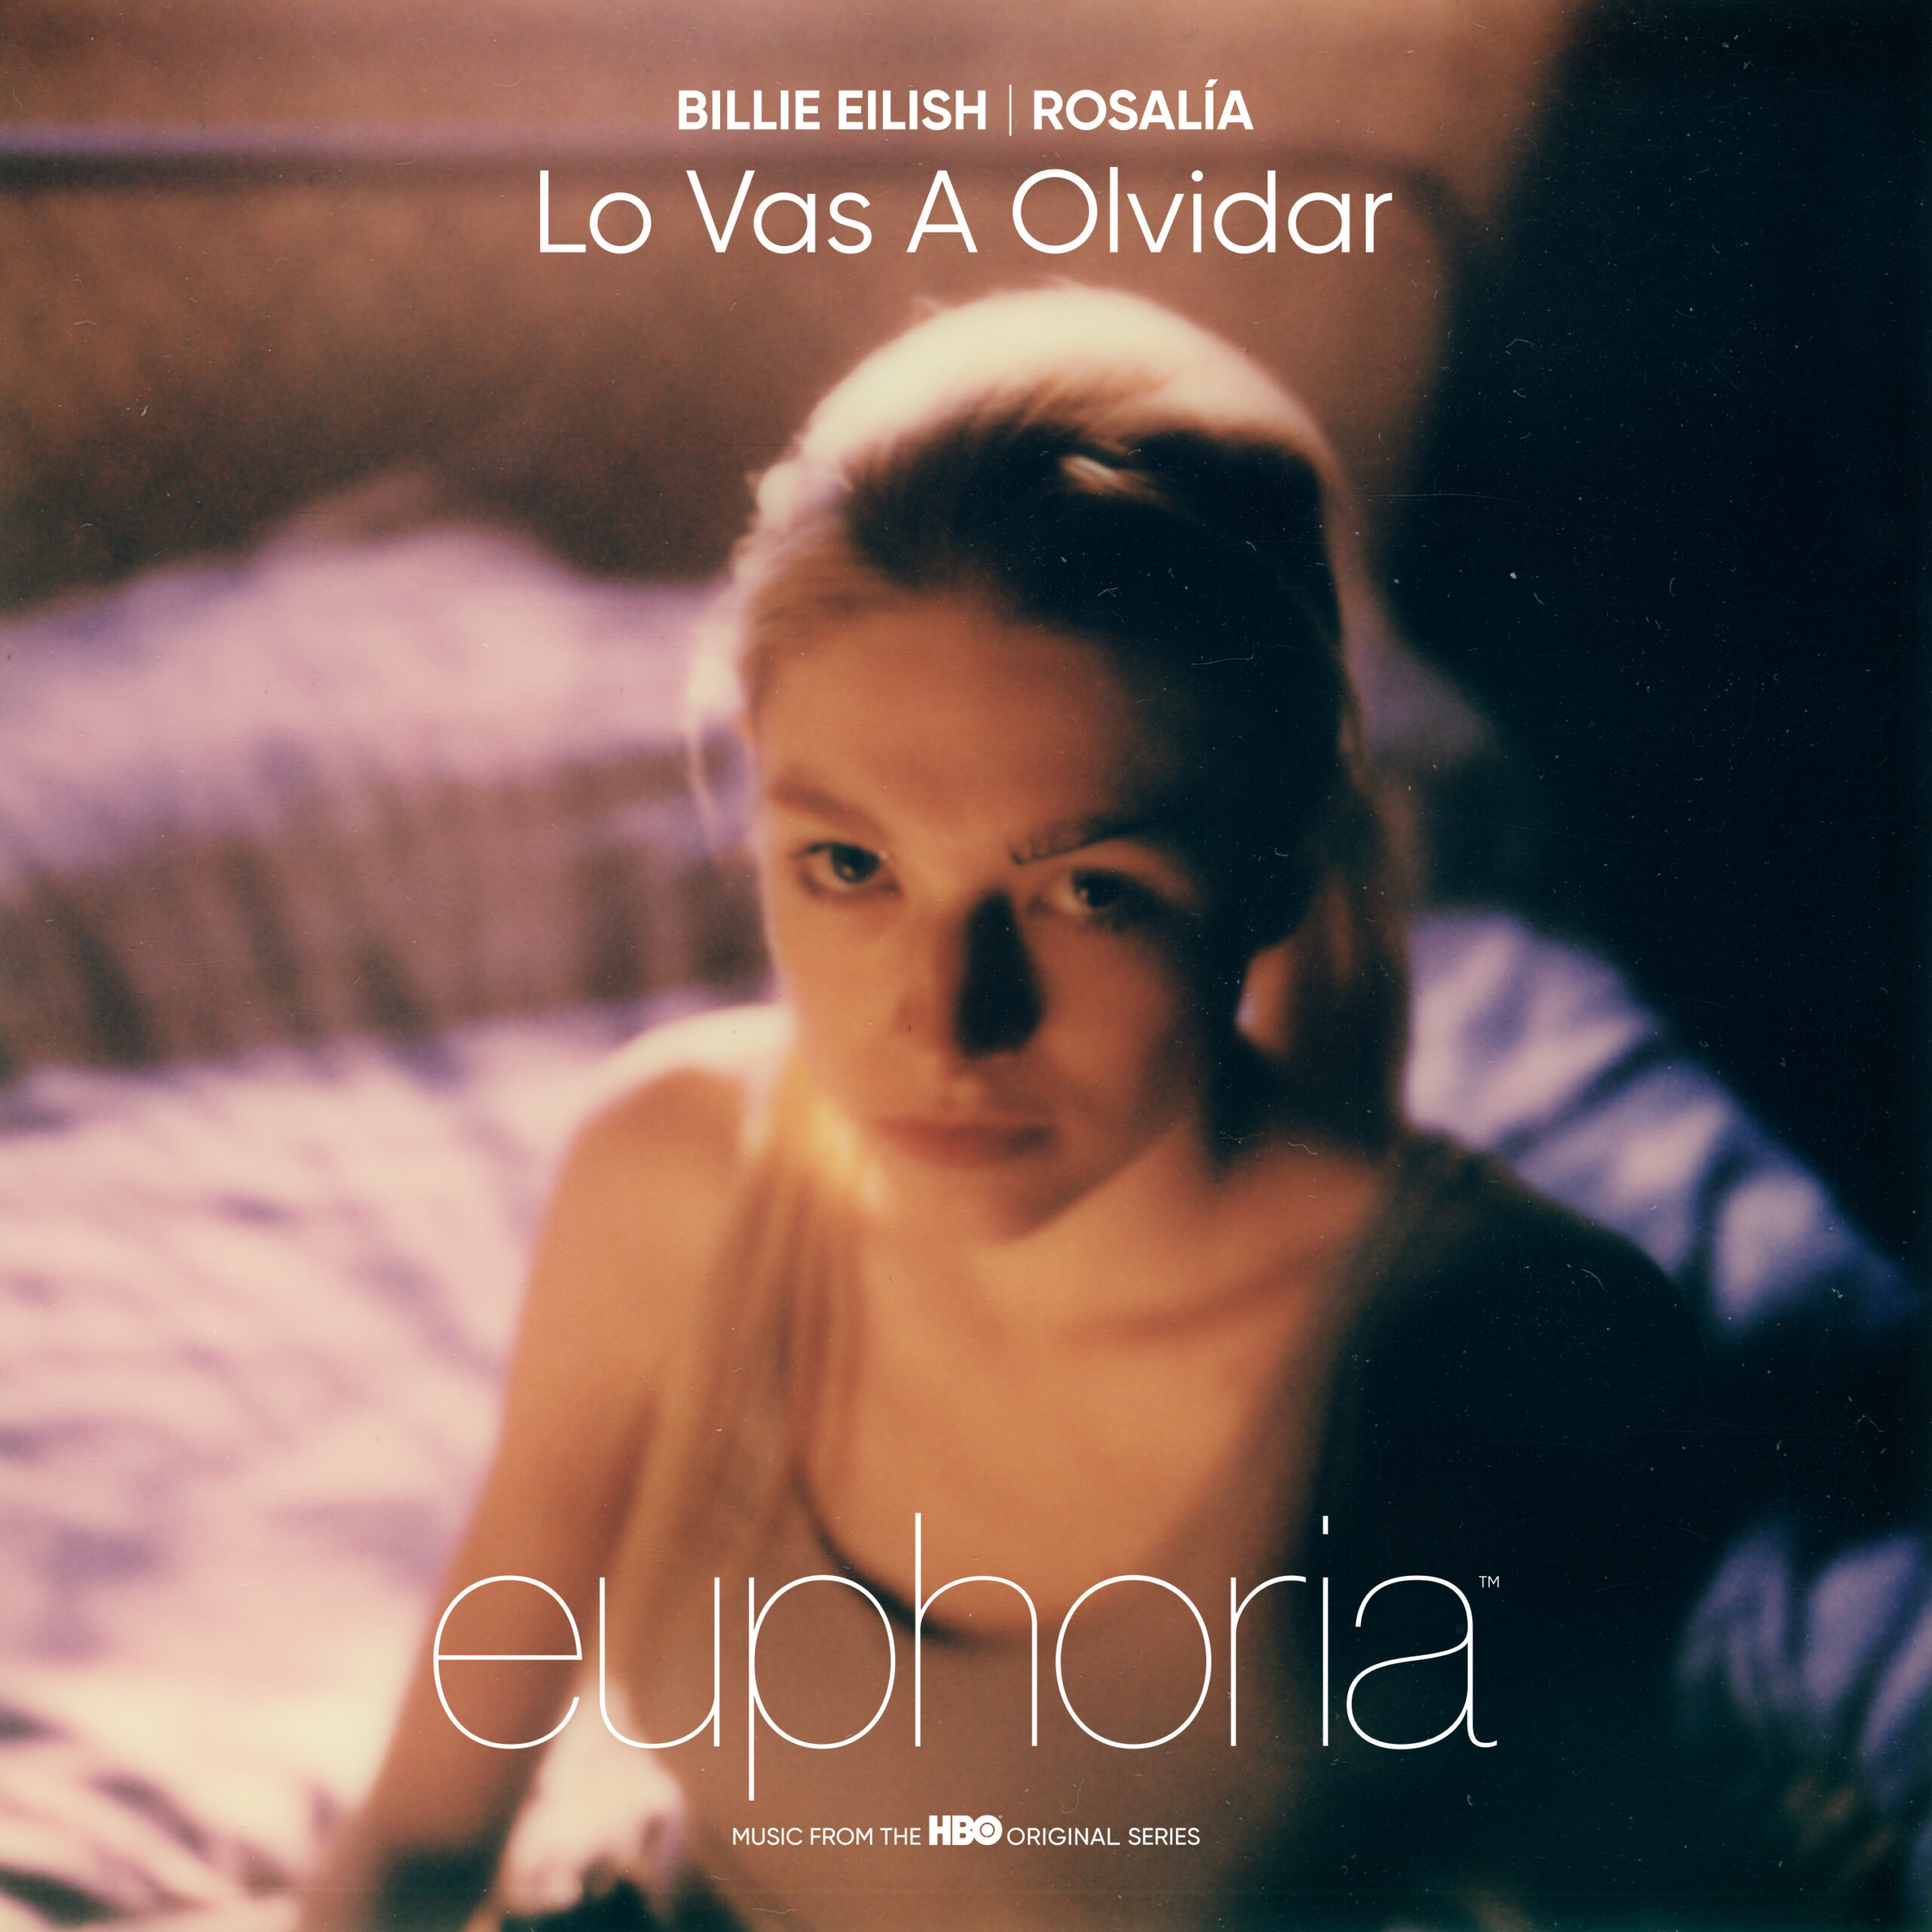 Billie Eilish i Rosalía u novom singlu Lo Vas A Olvidar koja je izašla danas za seriju Euphoria